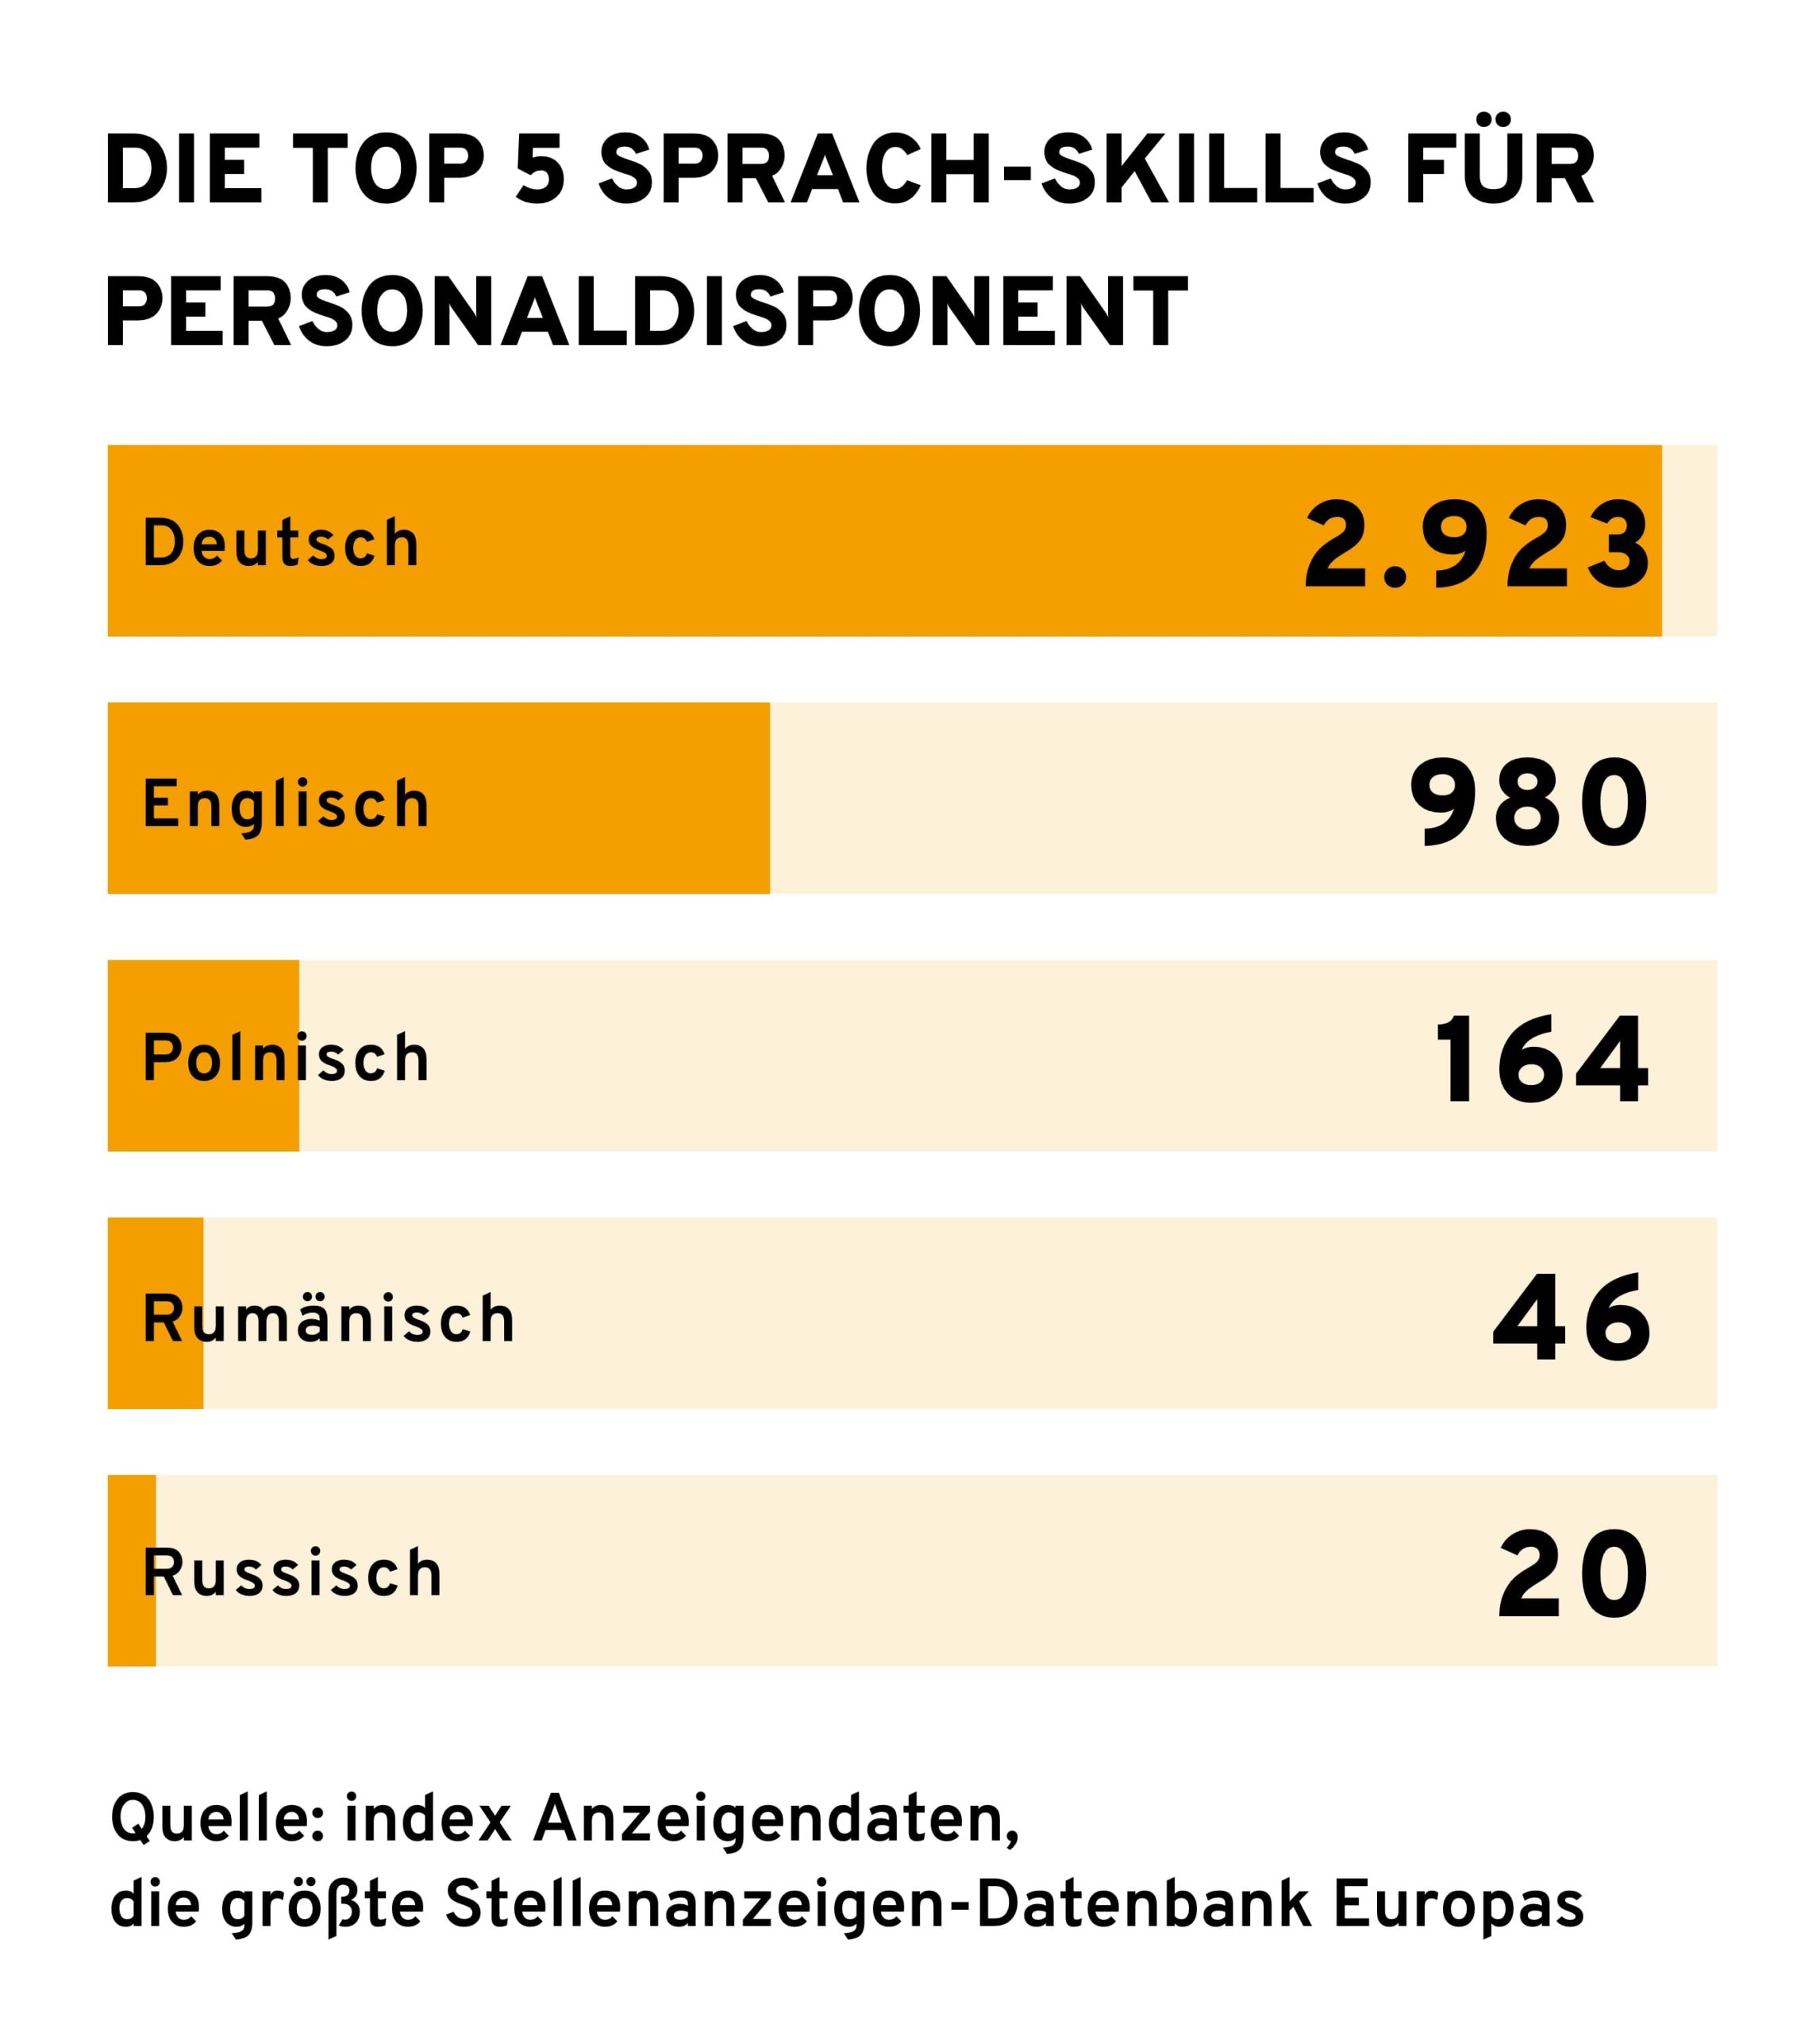 Infografik mit dem Titel "Die Top 5 Sprach-Skills für Personaldisponent". Sie zeigt ein Balkendiagramm, das die Häufigkeit der Sprachkenntnisse auflistet, beginnend mit Deutsch (2.923), Englisch (980), Polnisch (164), Rumänisch (46) und Russisch (20). Am unteren Rand der Grafik wird die Quelle genannt: "index Anzeigendaten, die größte Stellenanzeigen-Datenbank Europas".